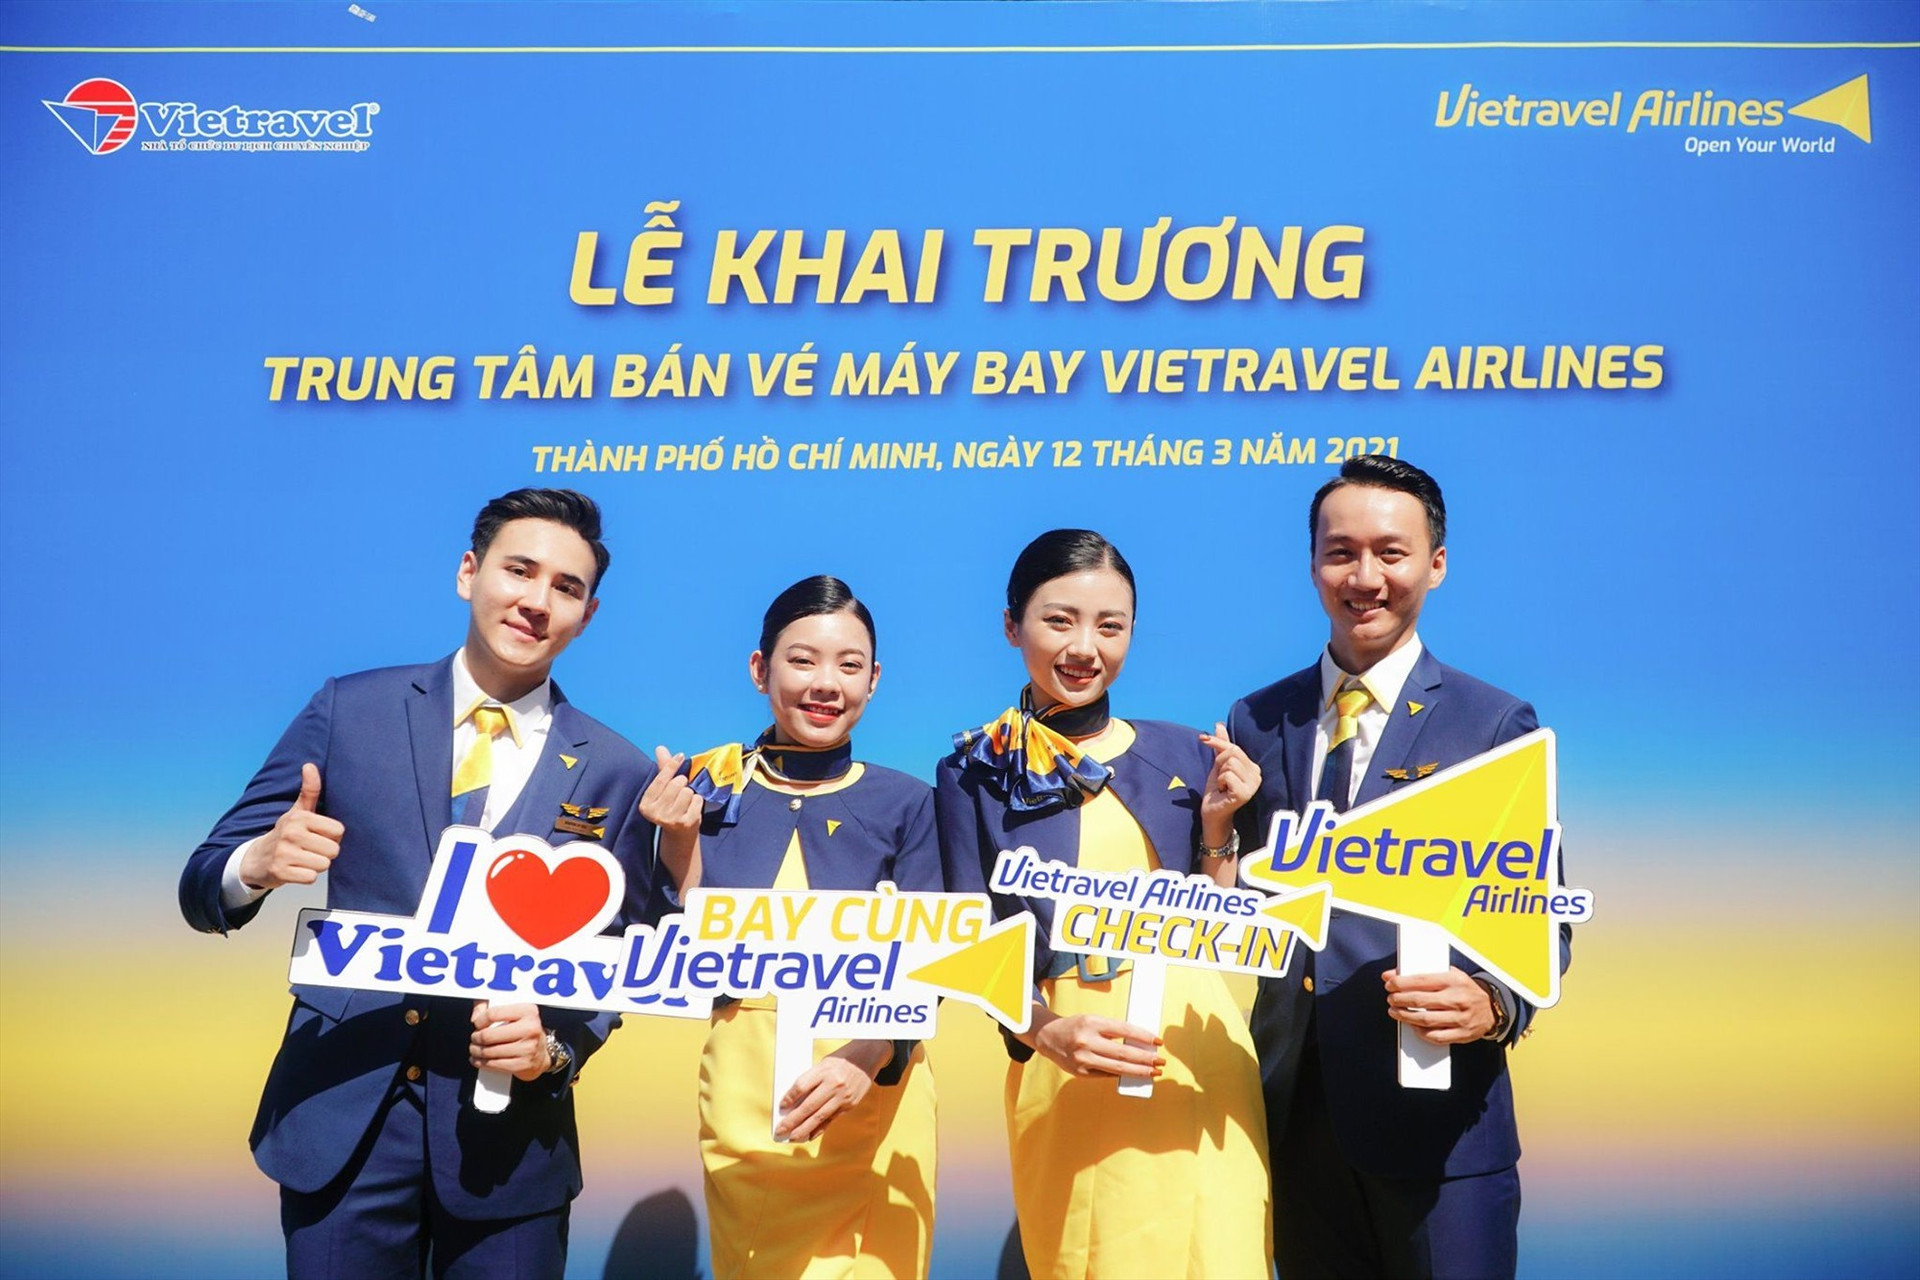 Vietravel Airlines – Hãng hàng không du lịch đầu tiên của Việt Nam